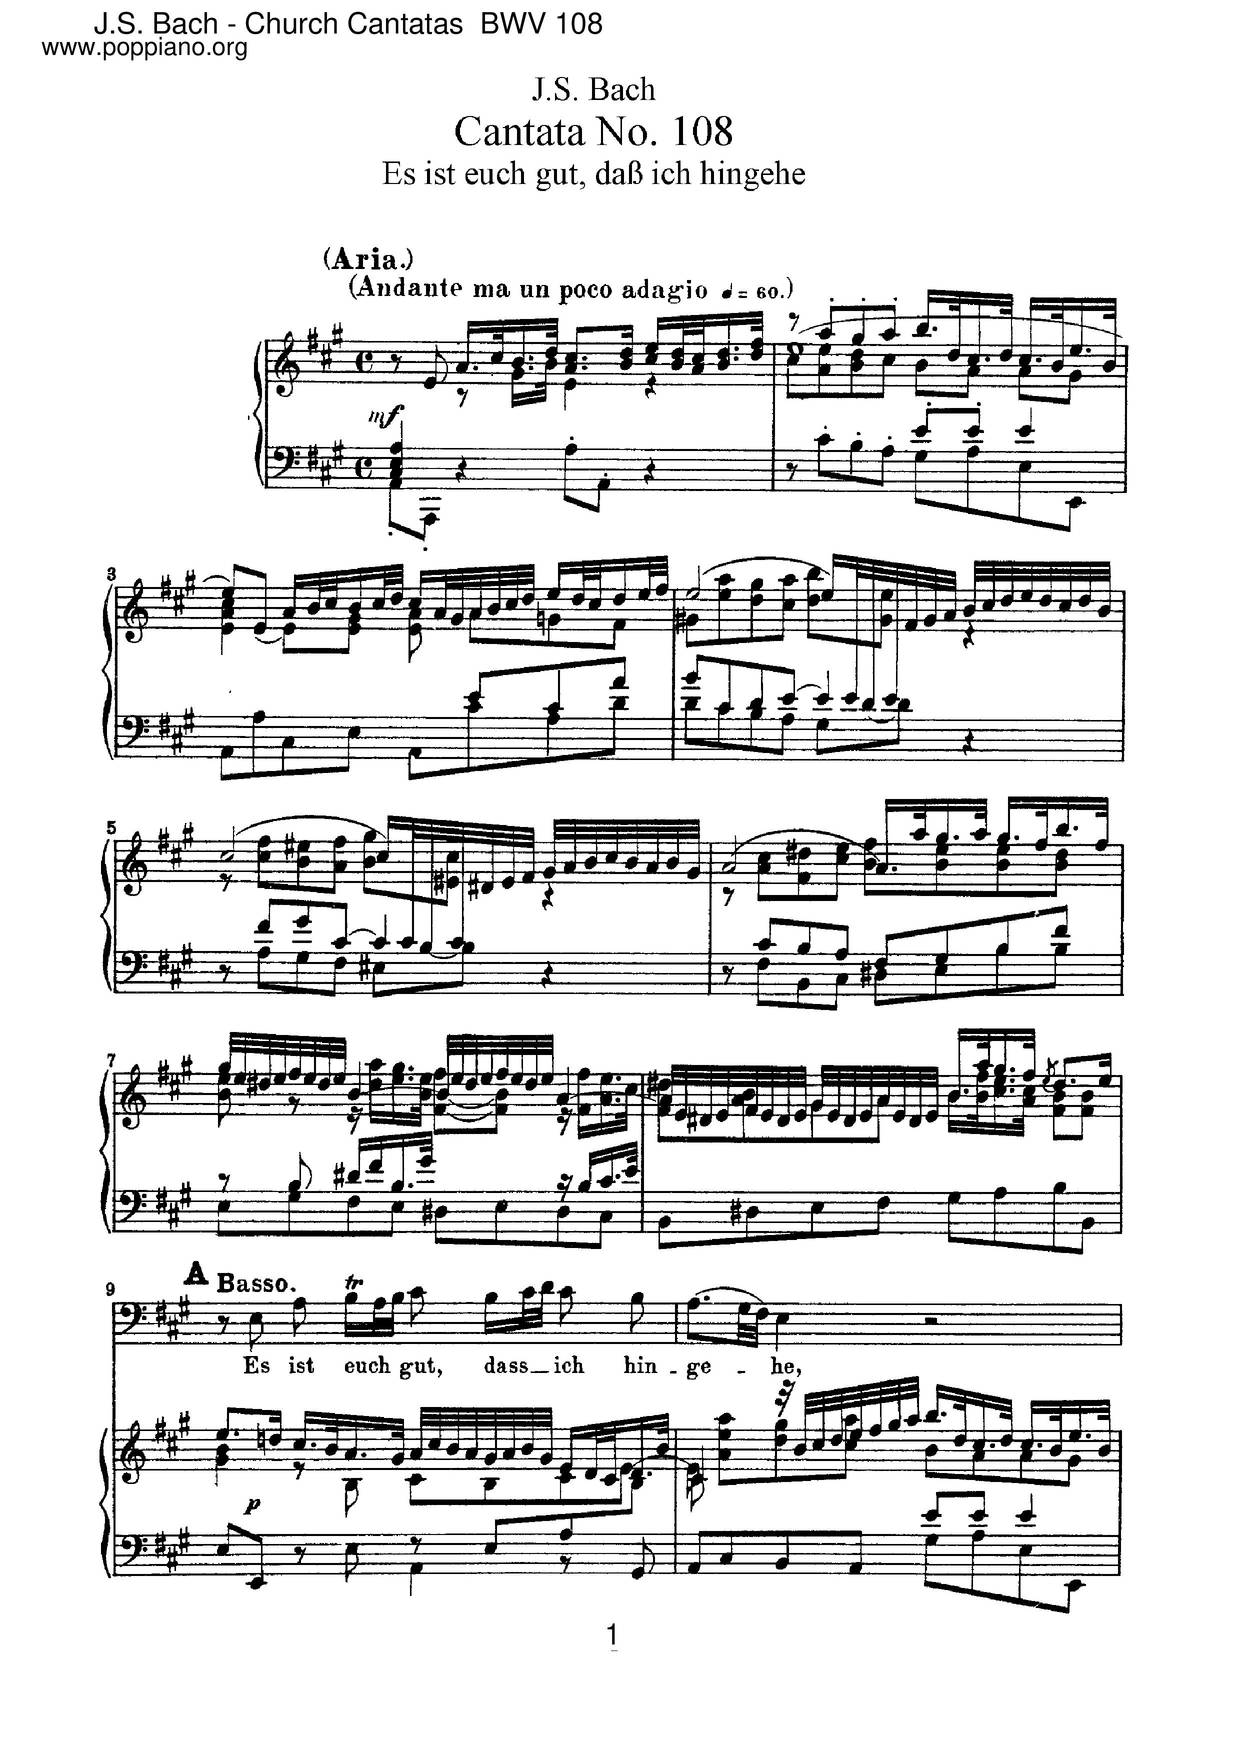 Es Ist Euch Gut, Dass Ich Hingehe, BWV 108ピアノ譜